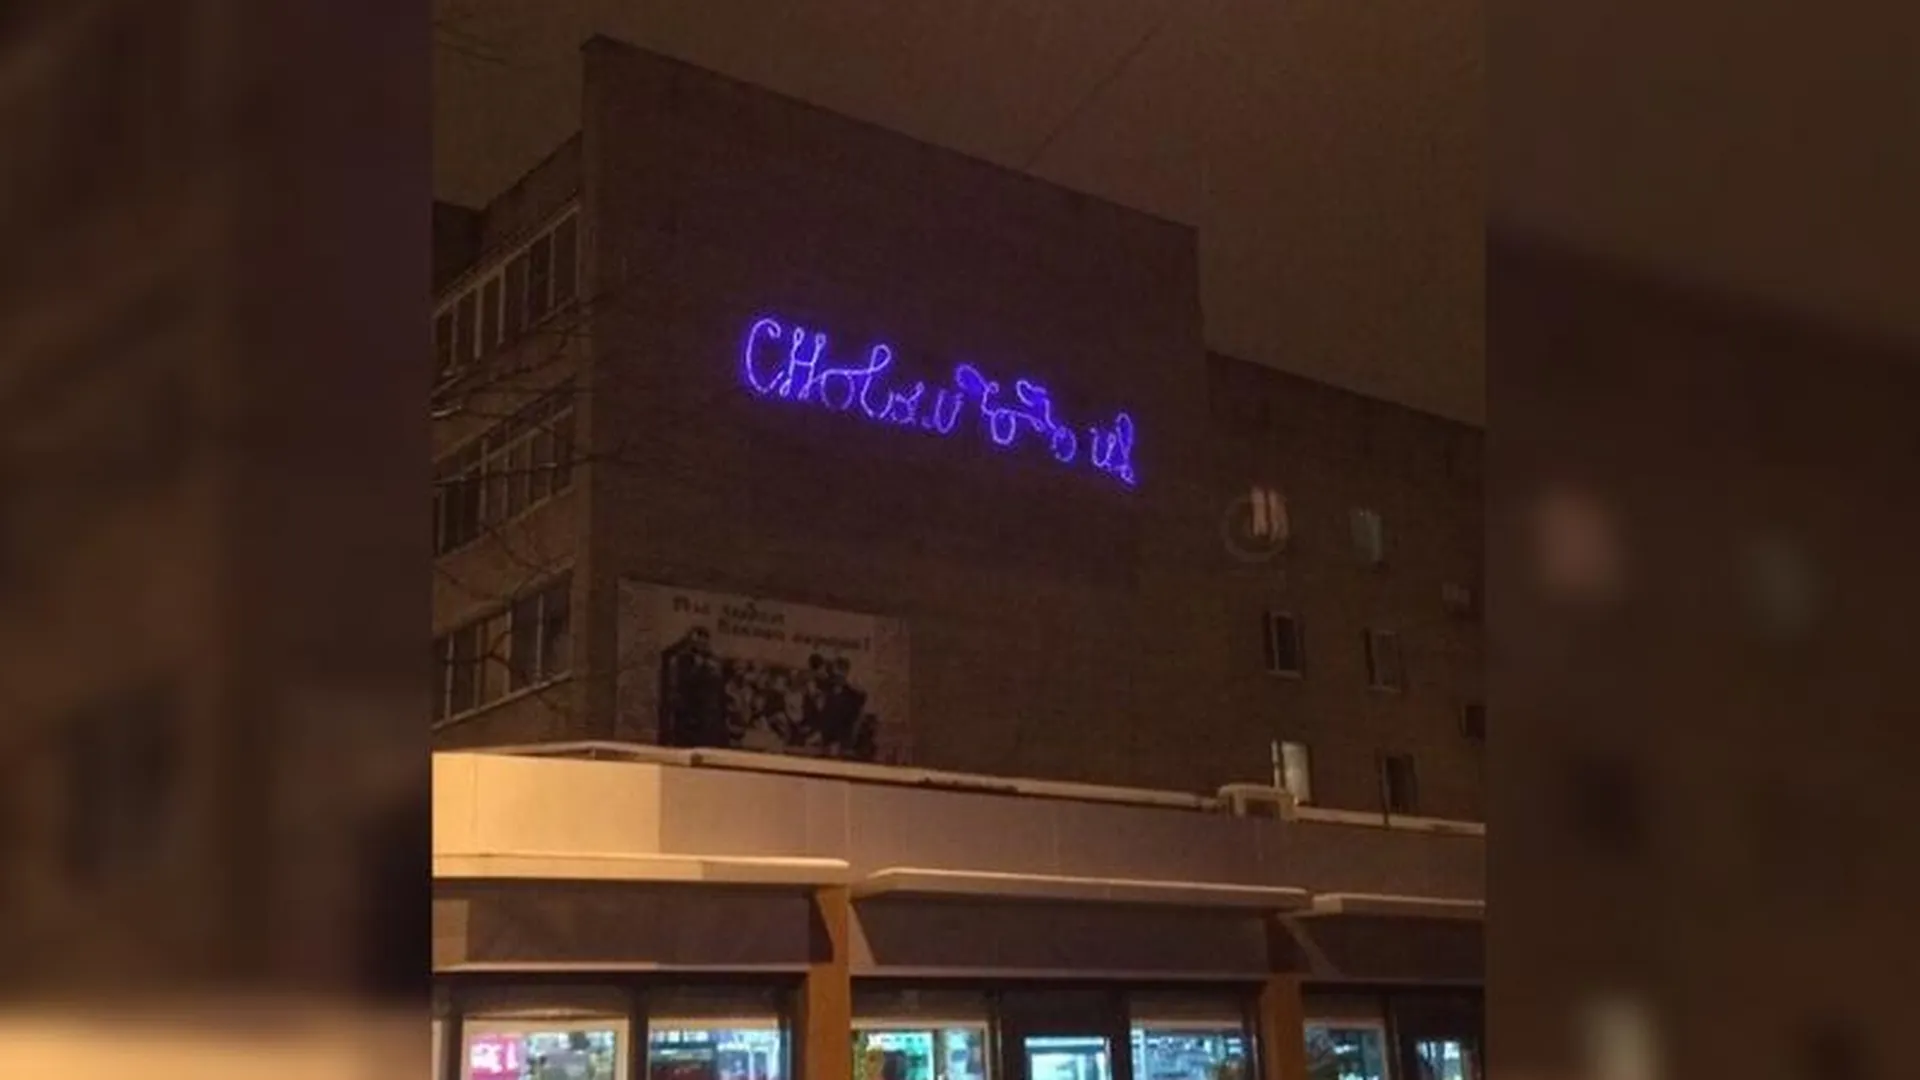 «Пьяная» новогодняя вывеска засветилась на фасаде дома в Лесном Городке